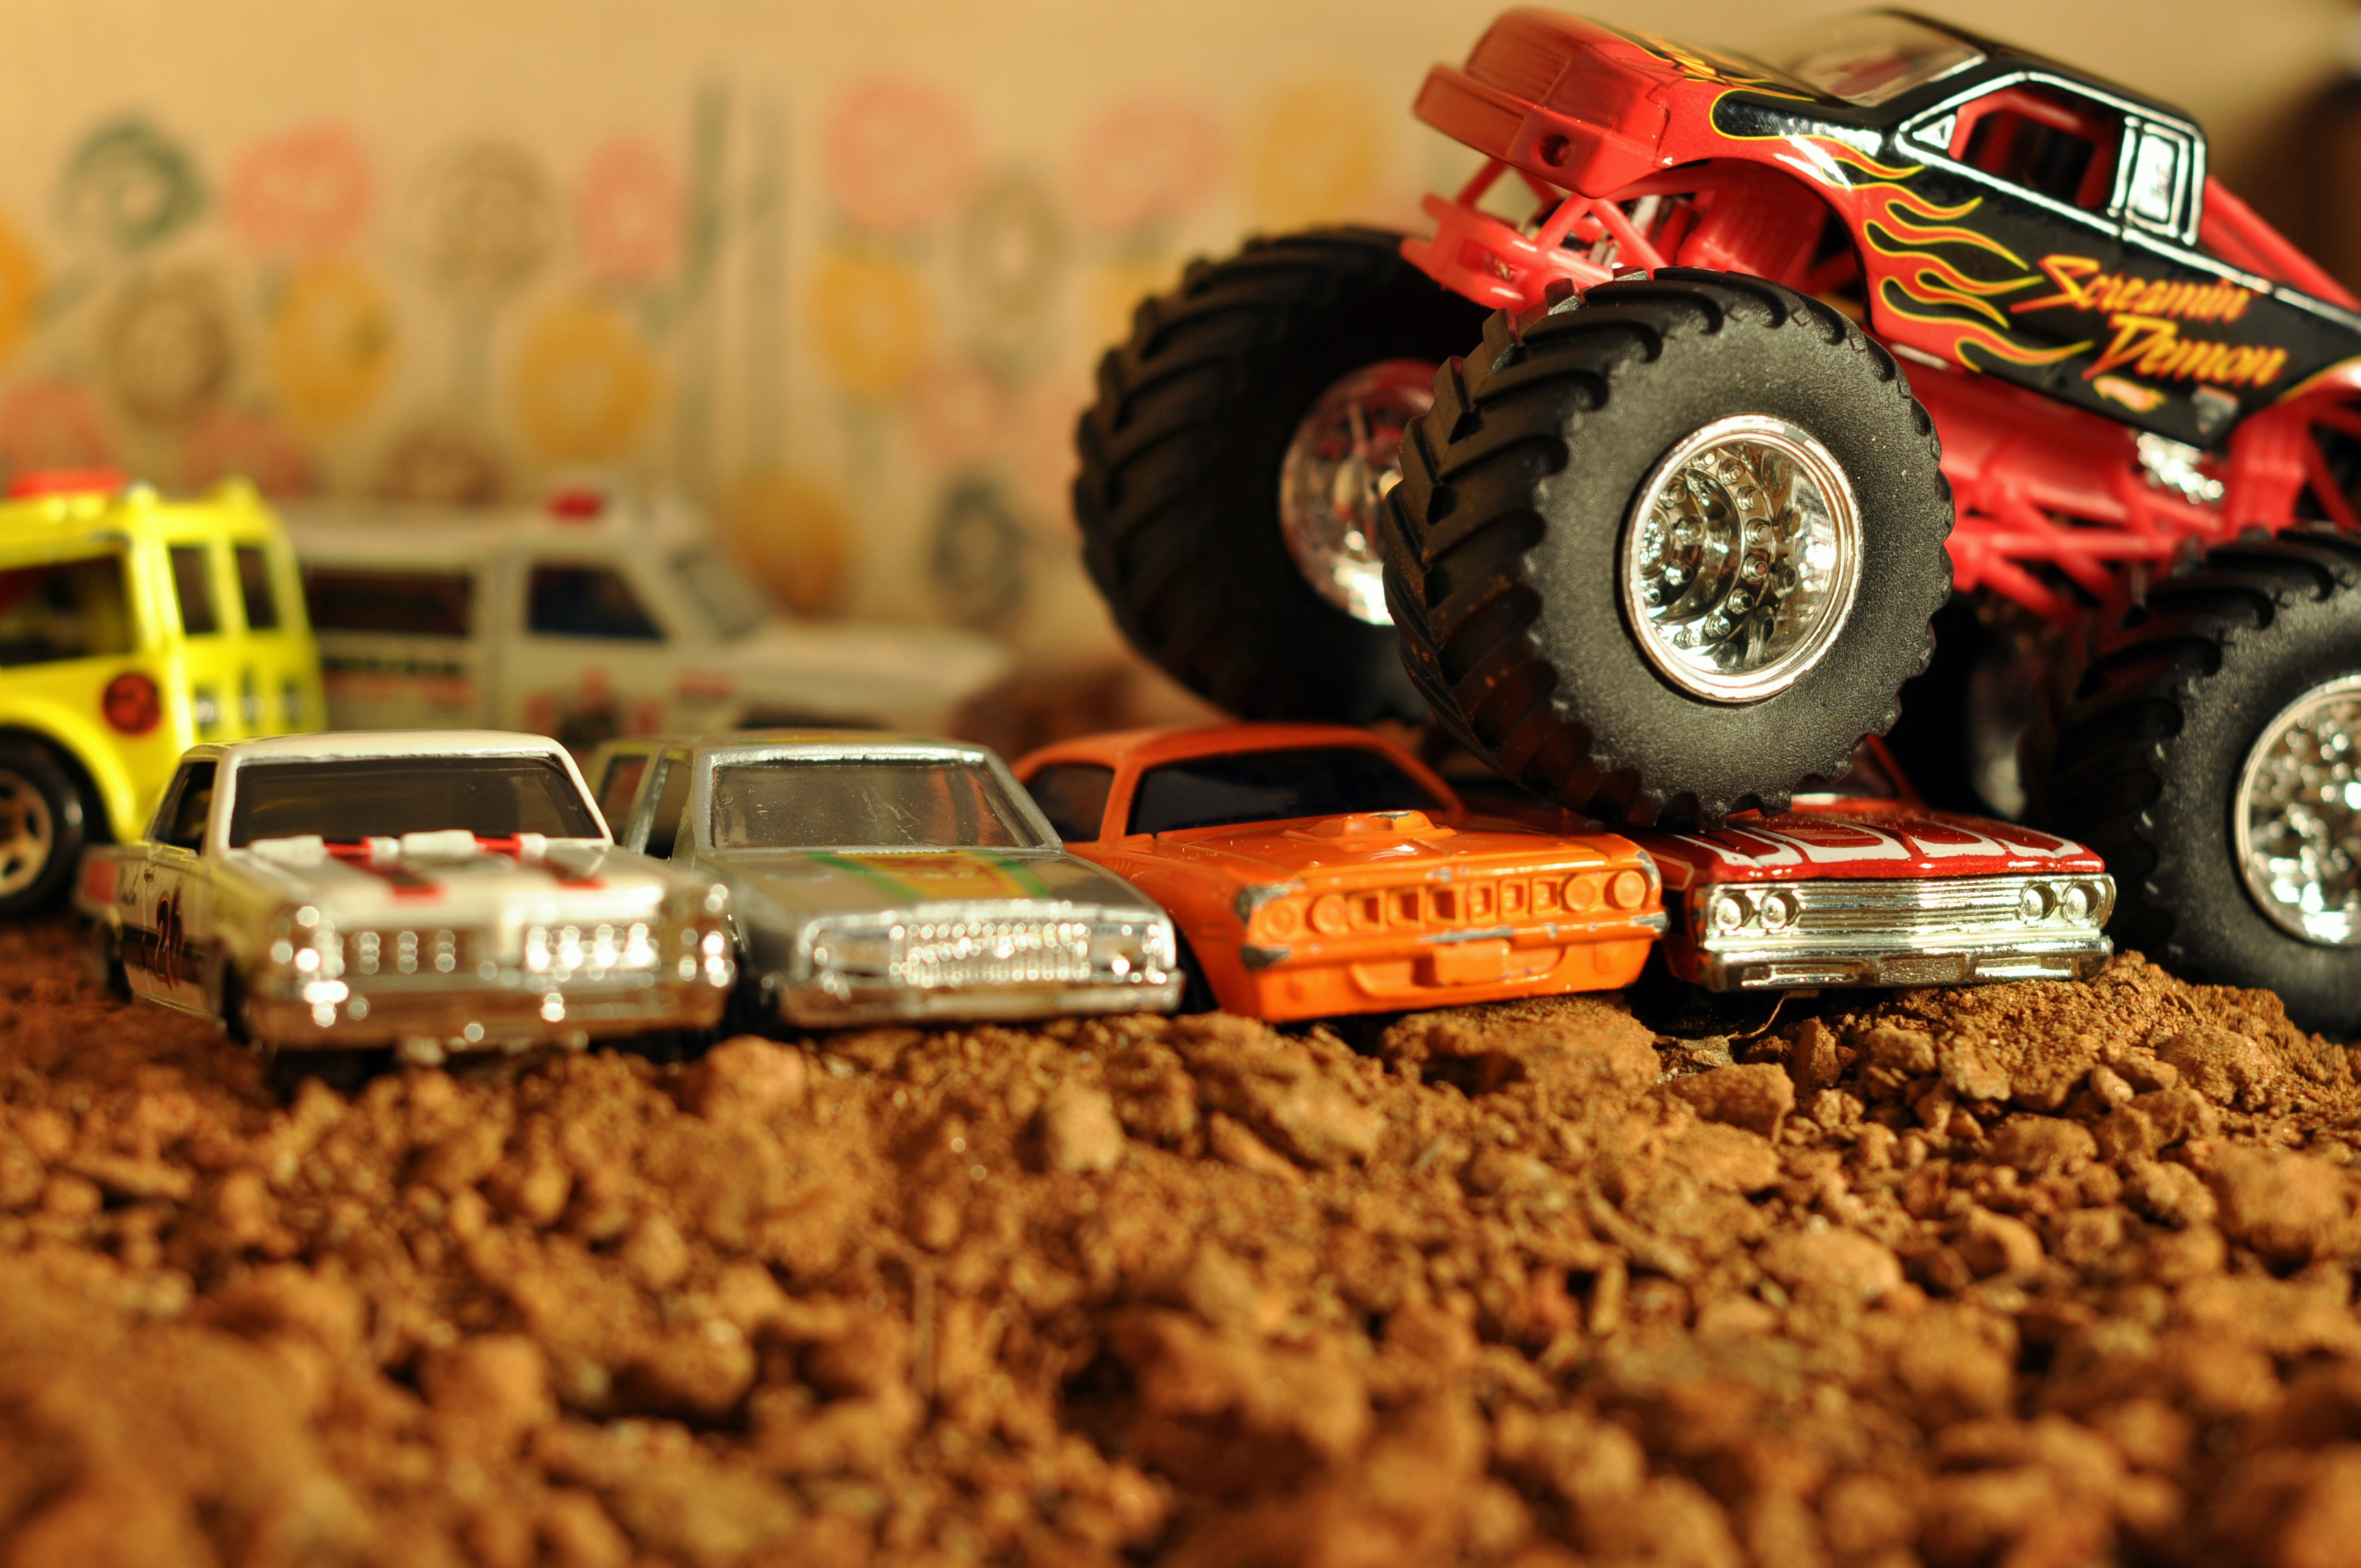 Hot Wheels, Matchbox, Monster Trucks, Toys - HD wallpapers